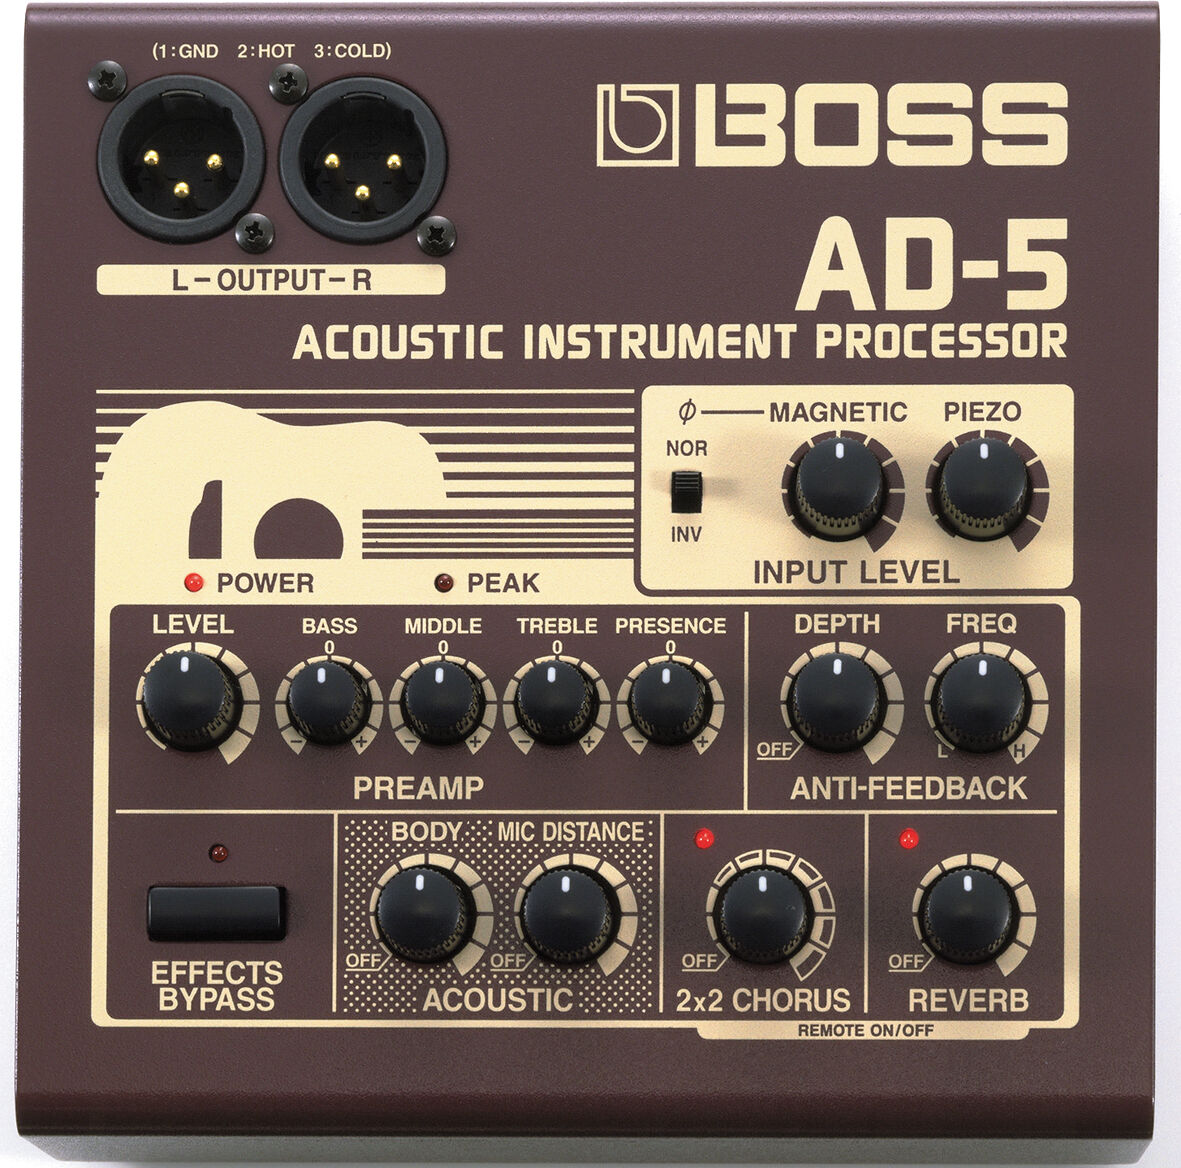 BOSS AD-5 acoustic instrument processor www.krzysztofbialy.com